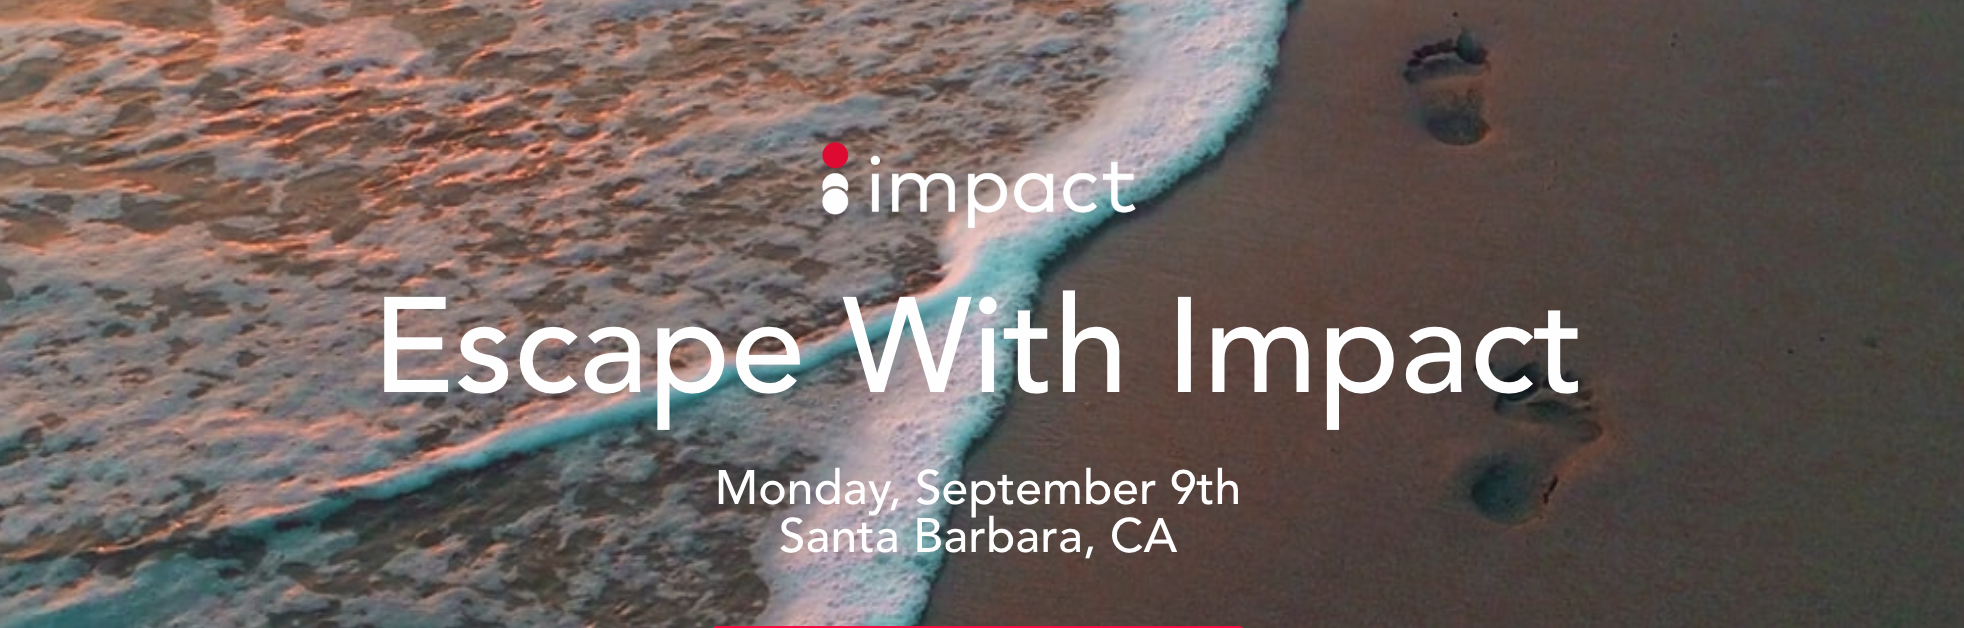 Escape with Impact event, Santa Barbara